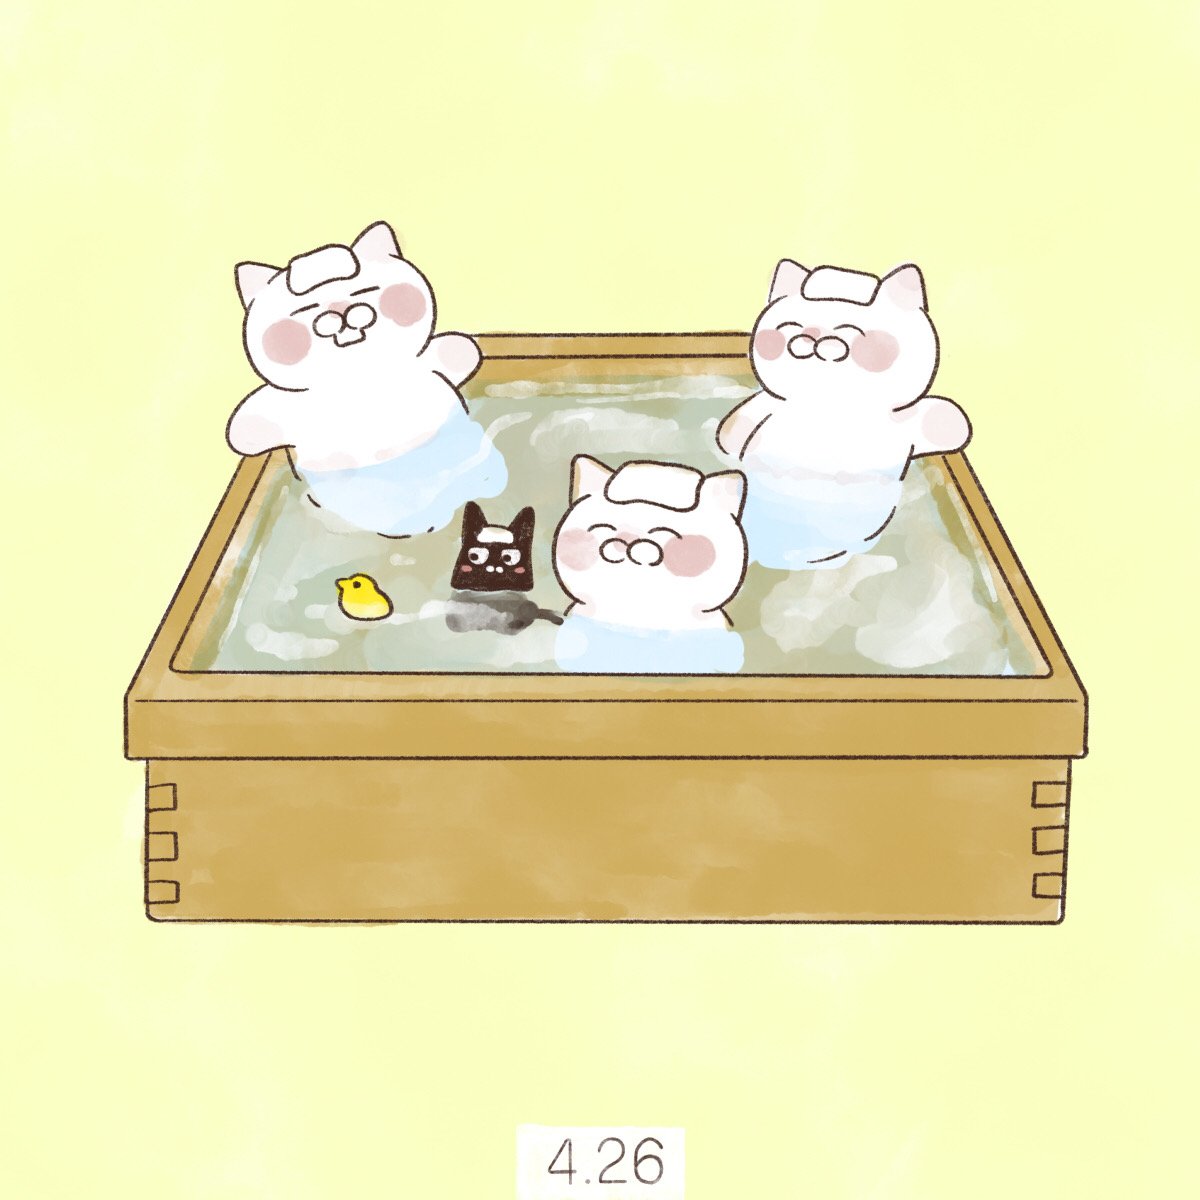 4月26日【よい風呂の日】
「426→よいふろ」の語呂合わせで制定されました。